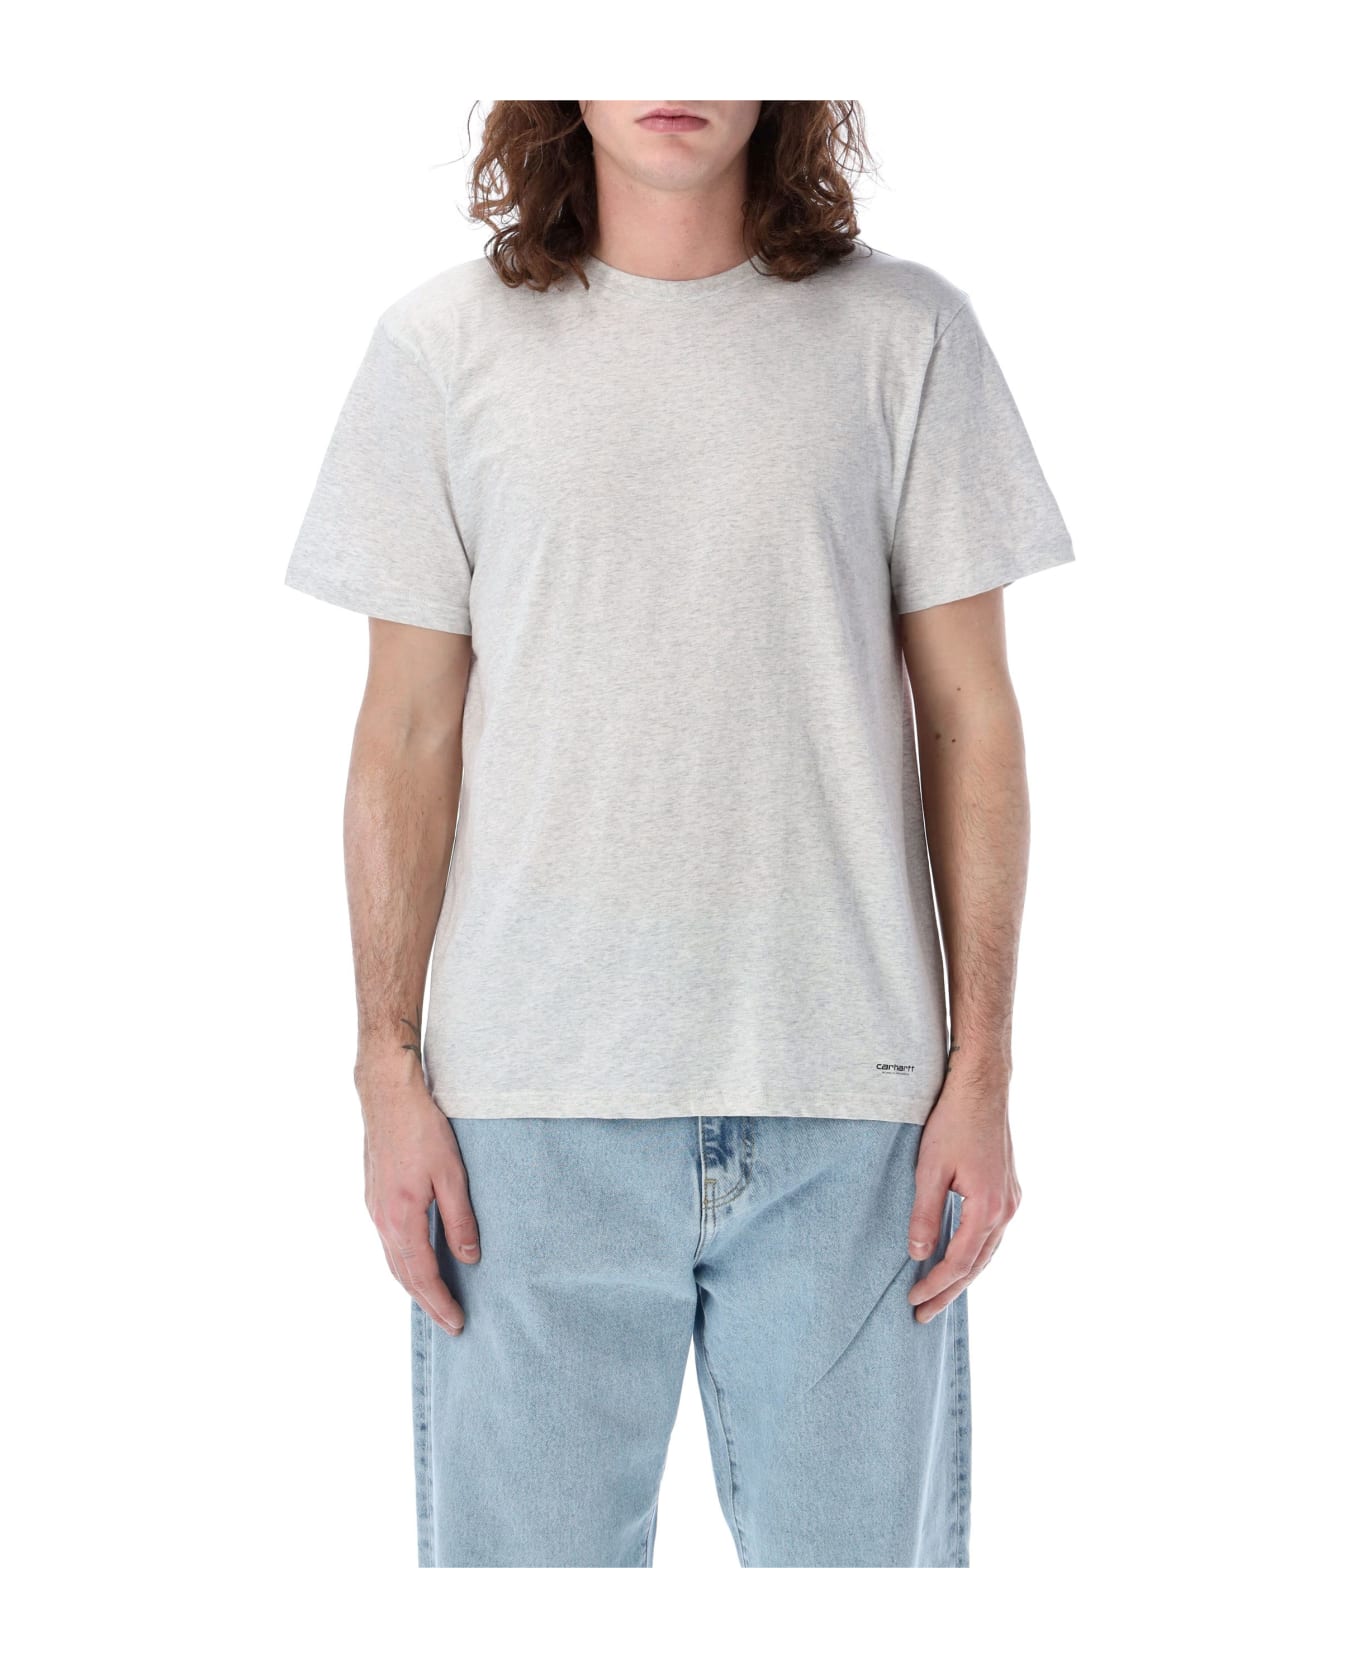 Carhartt 2 Pack Standard T-shirt - ASH HEATHER